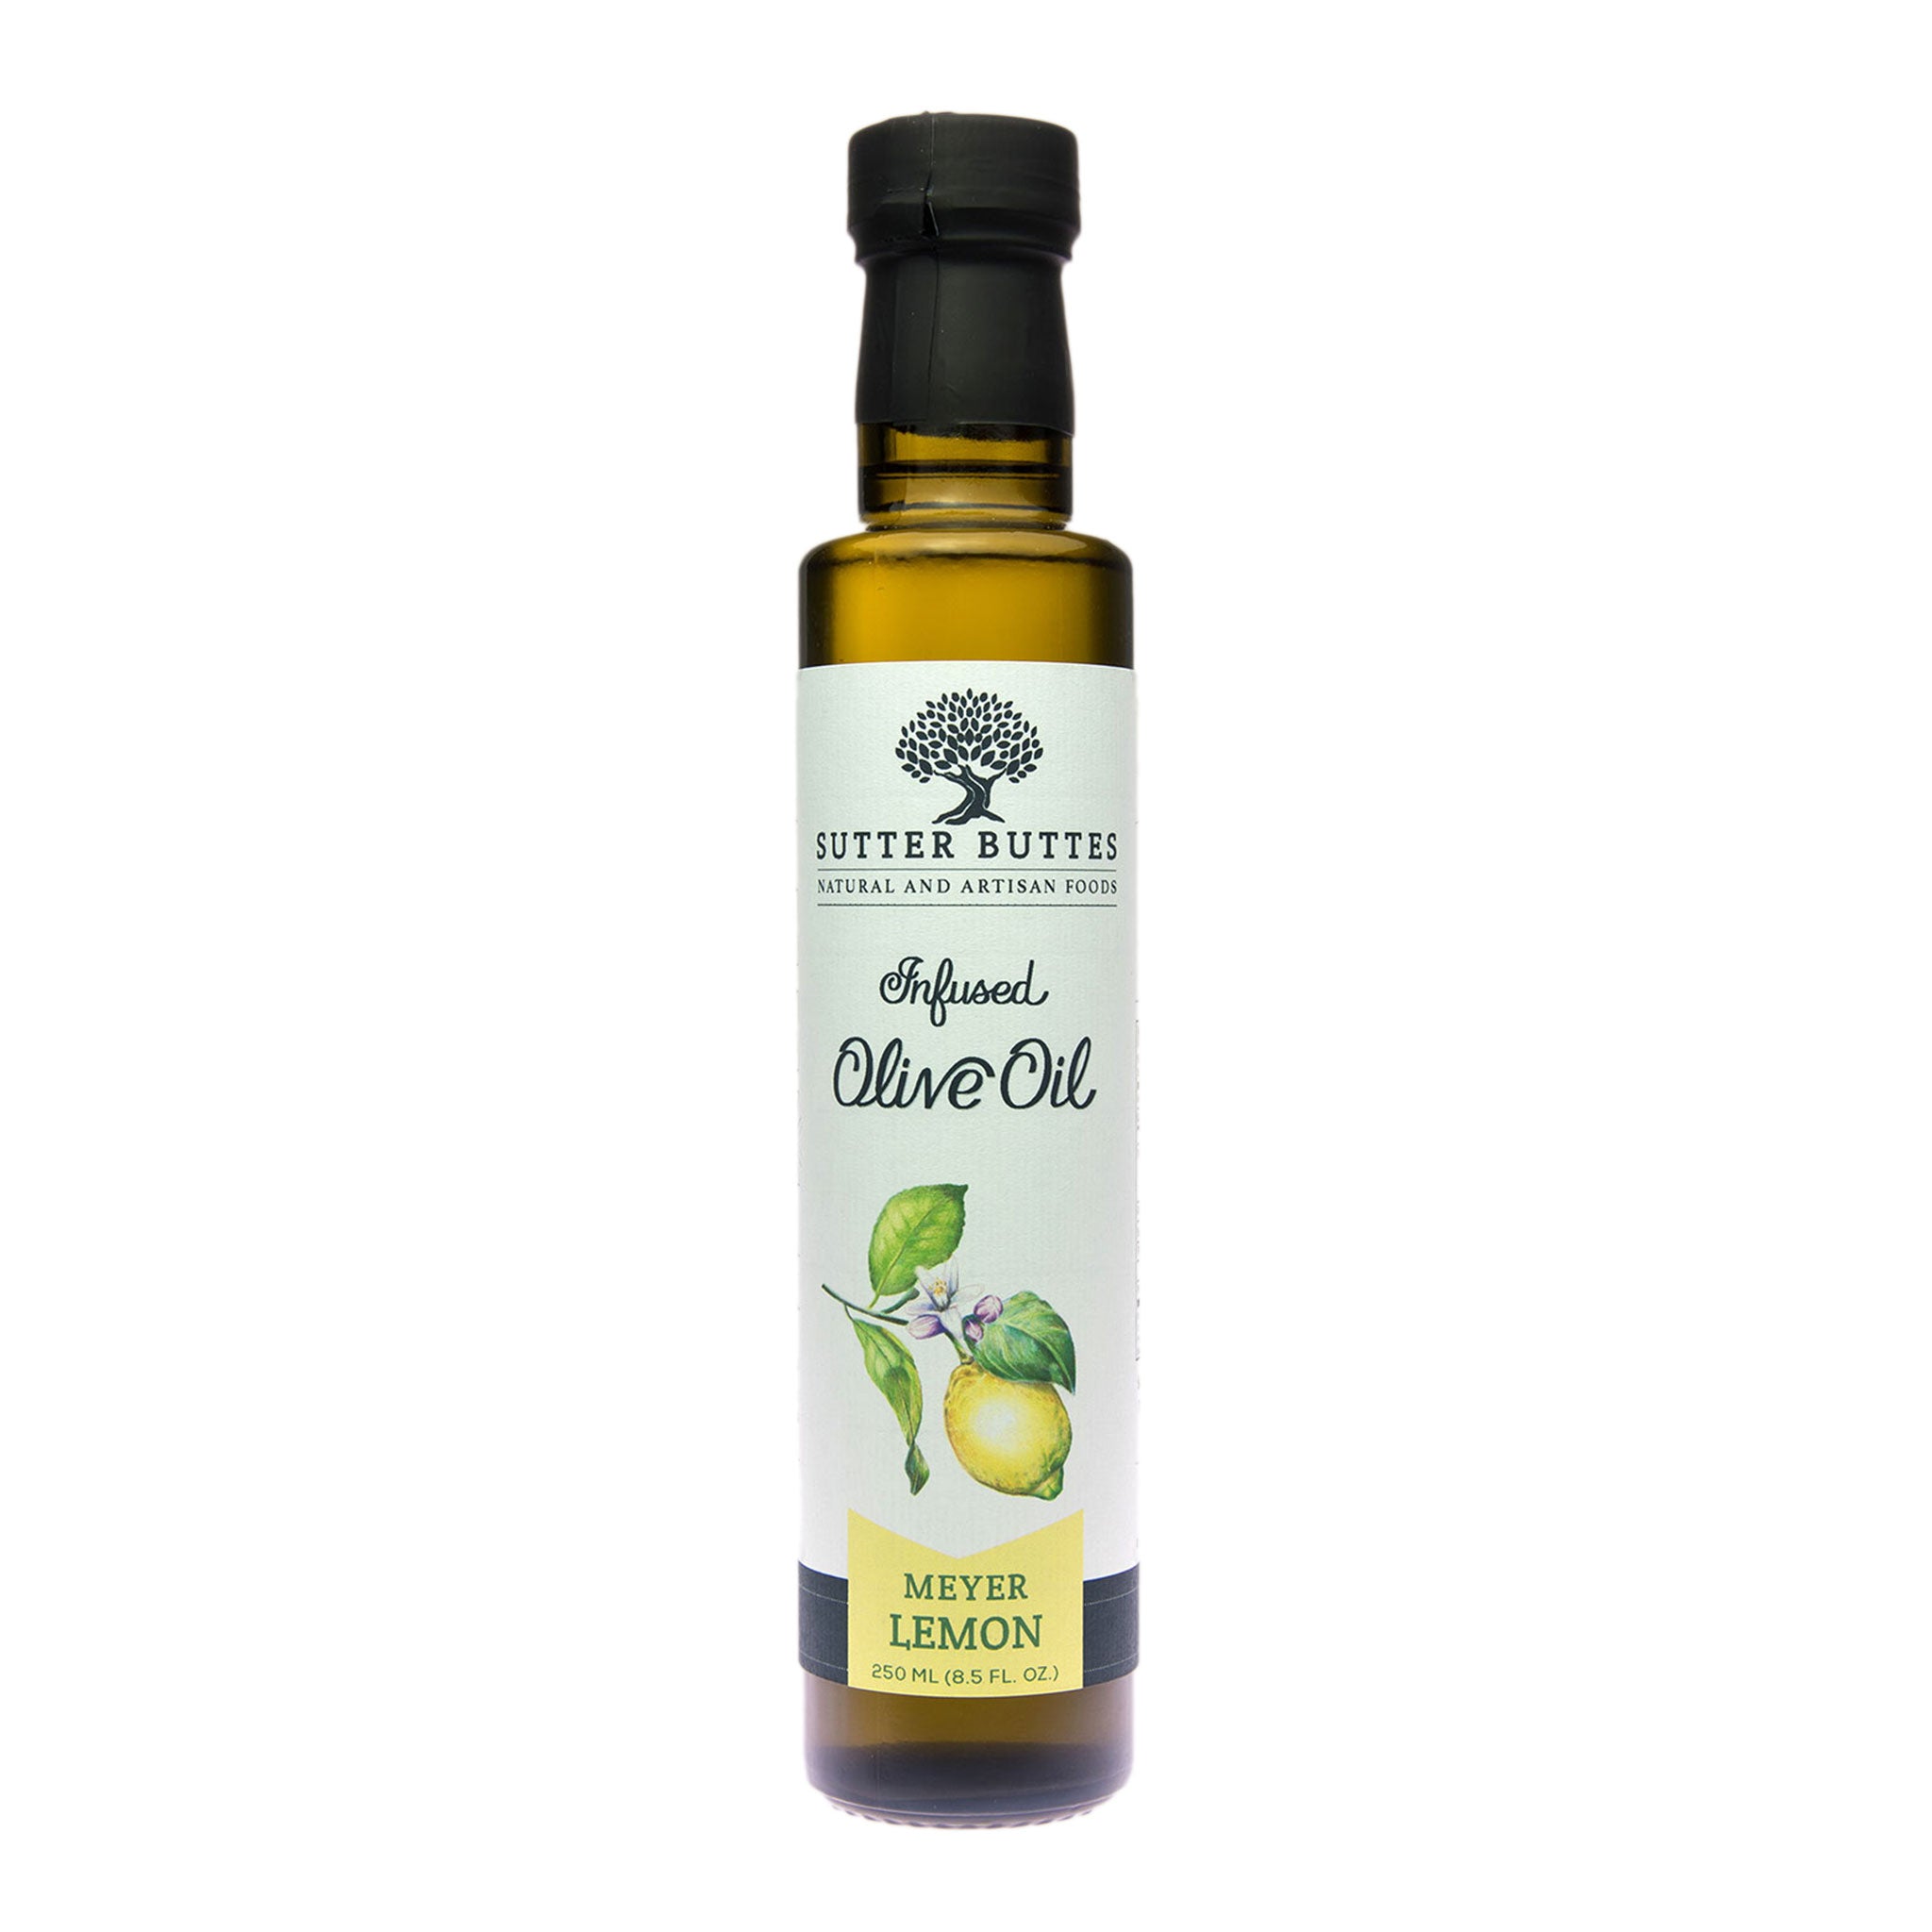 Meyer Lemon Olive Oil, 250 ml